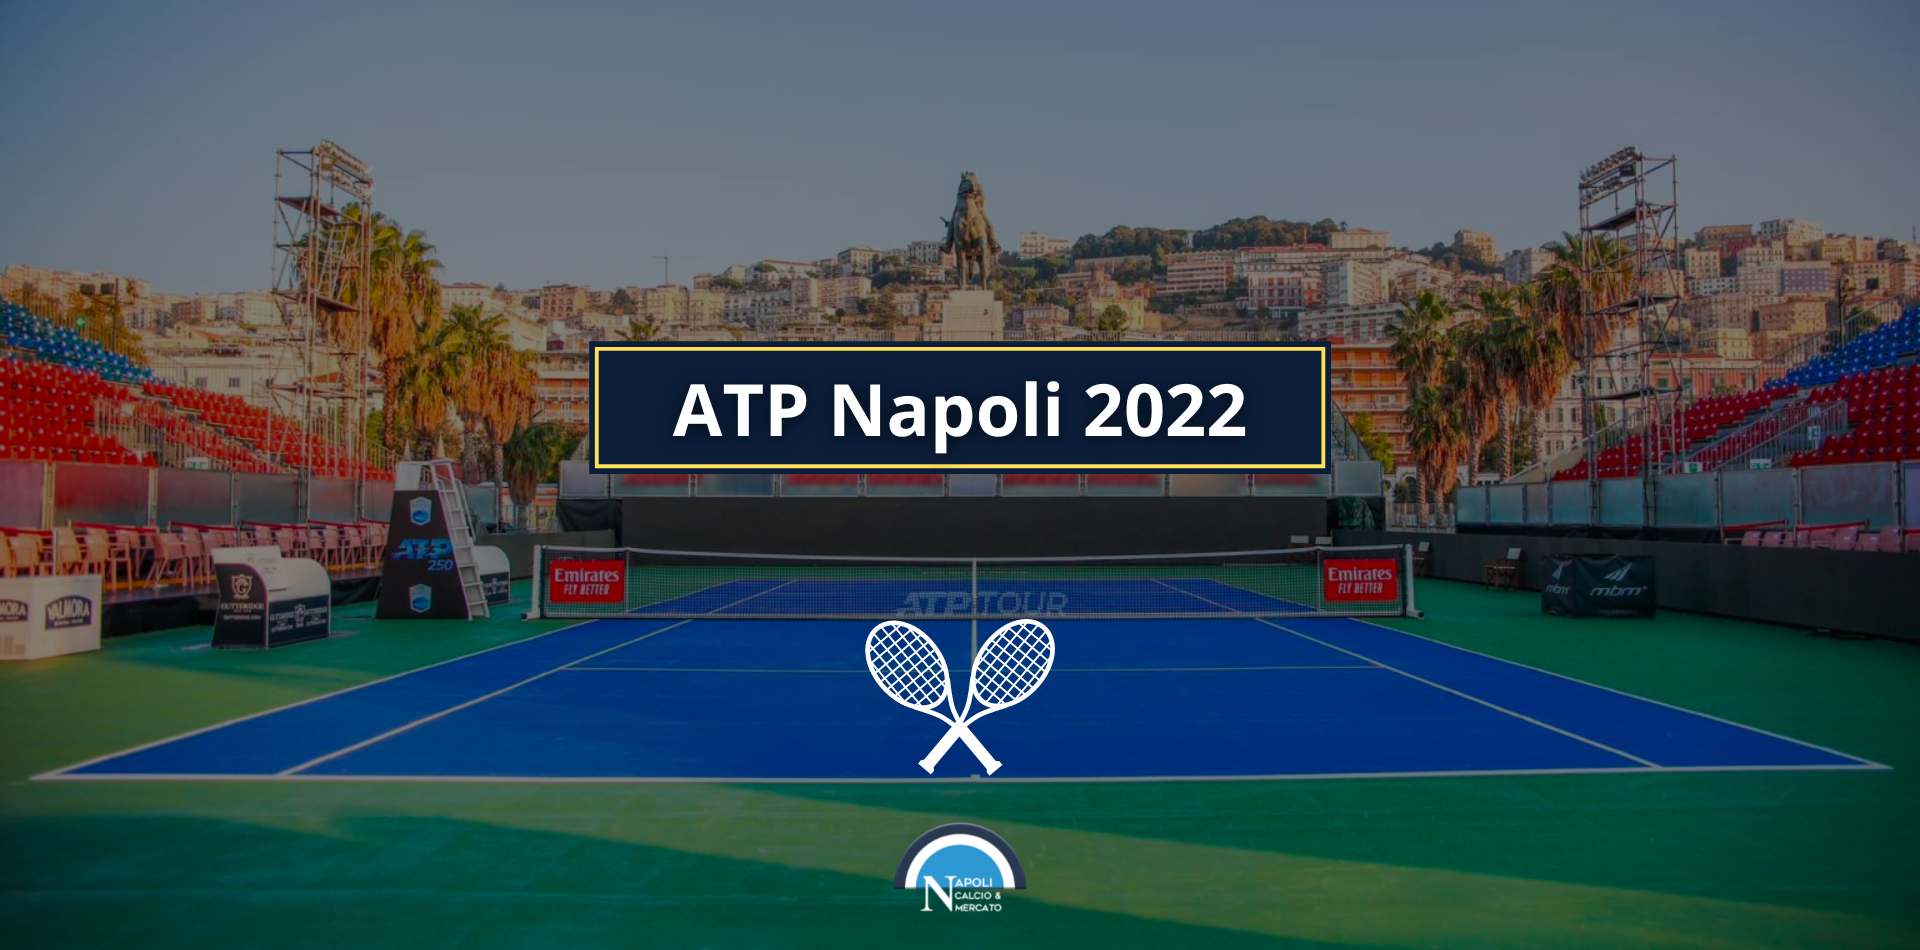 atp napoli 2022 tennis